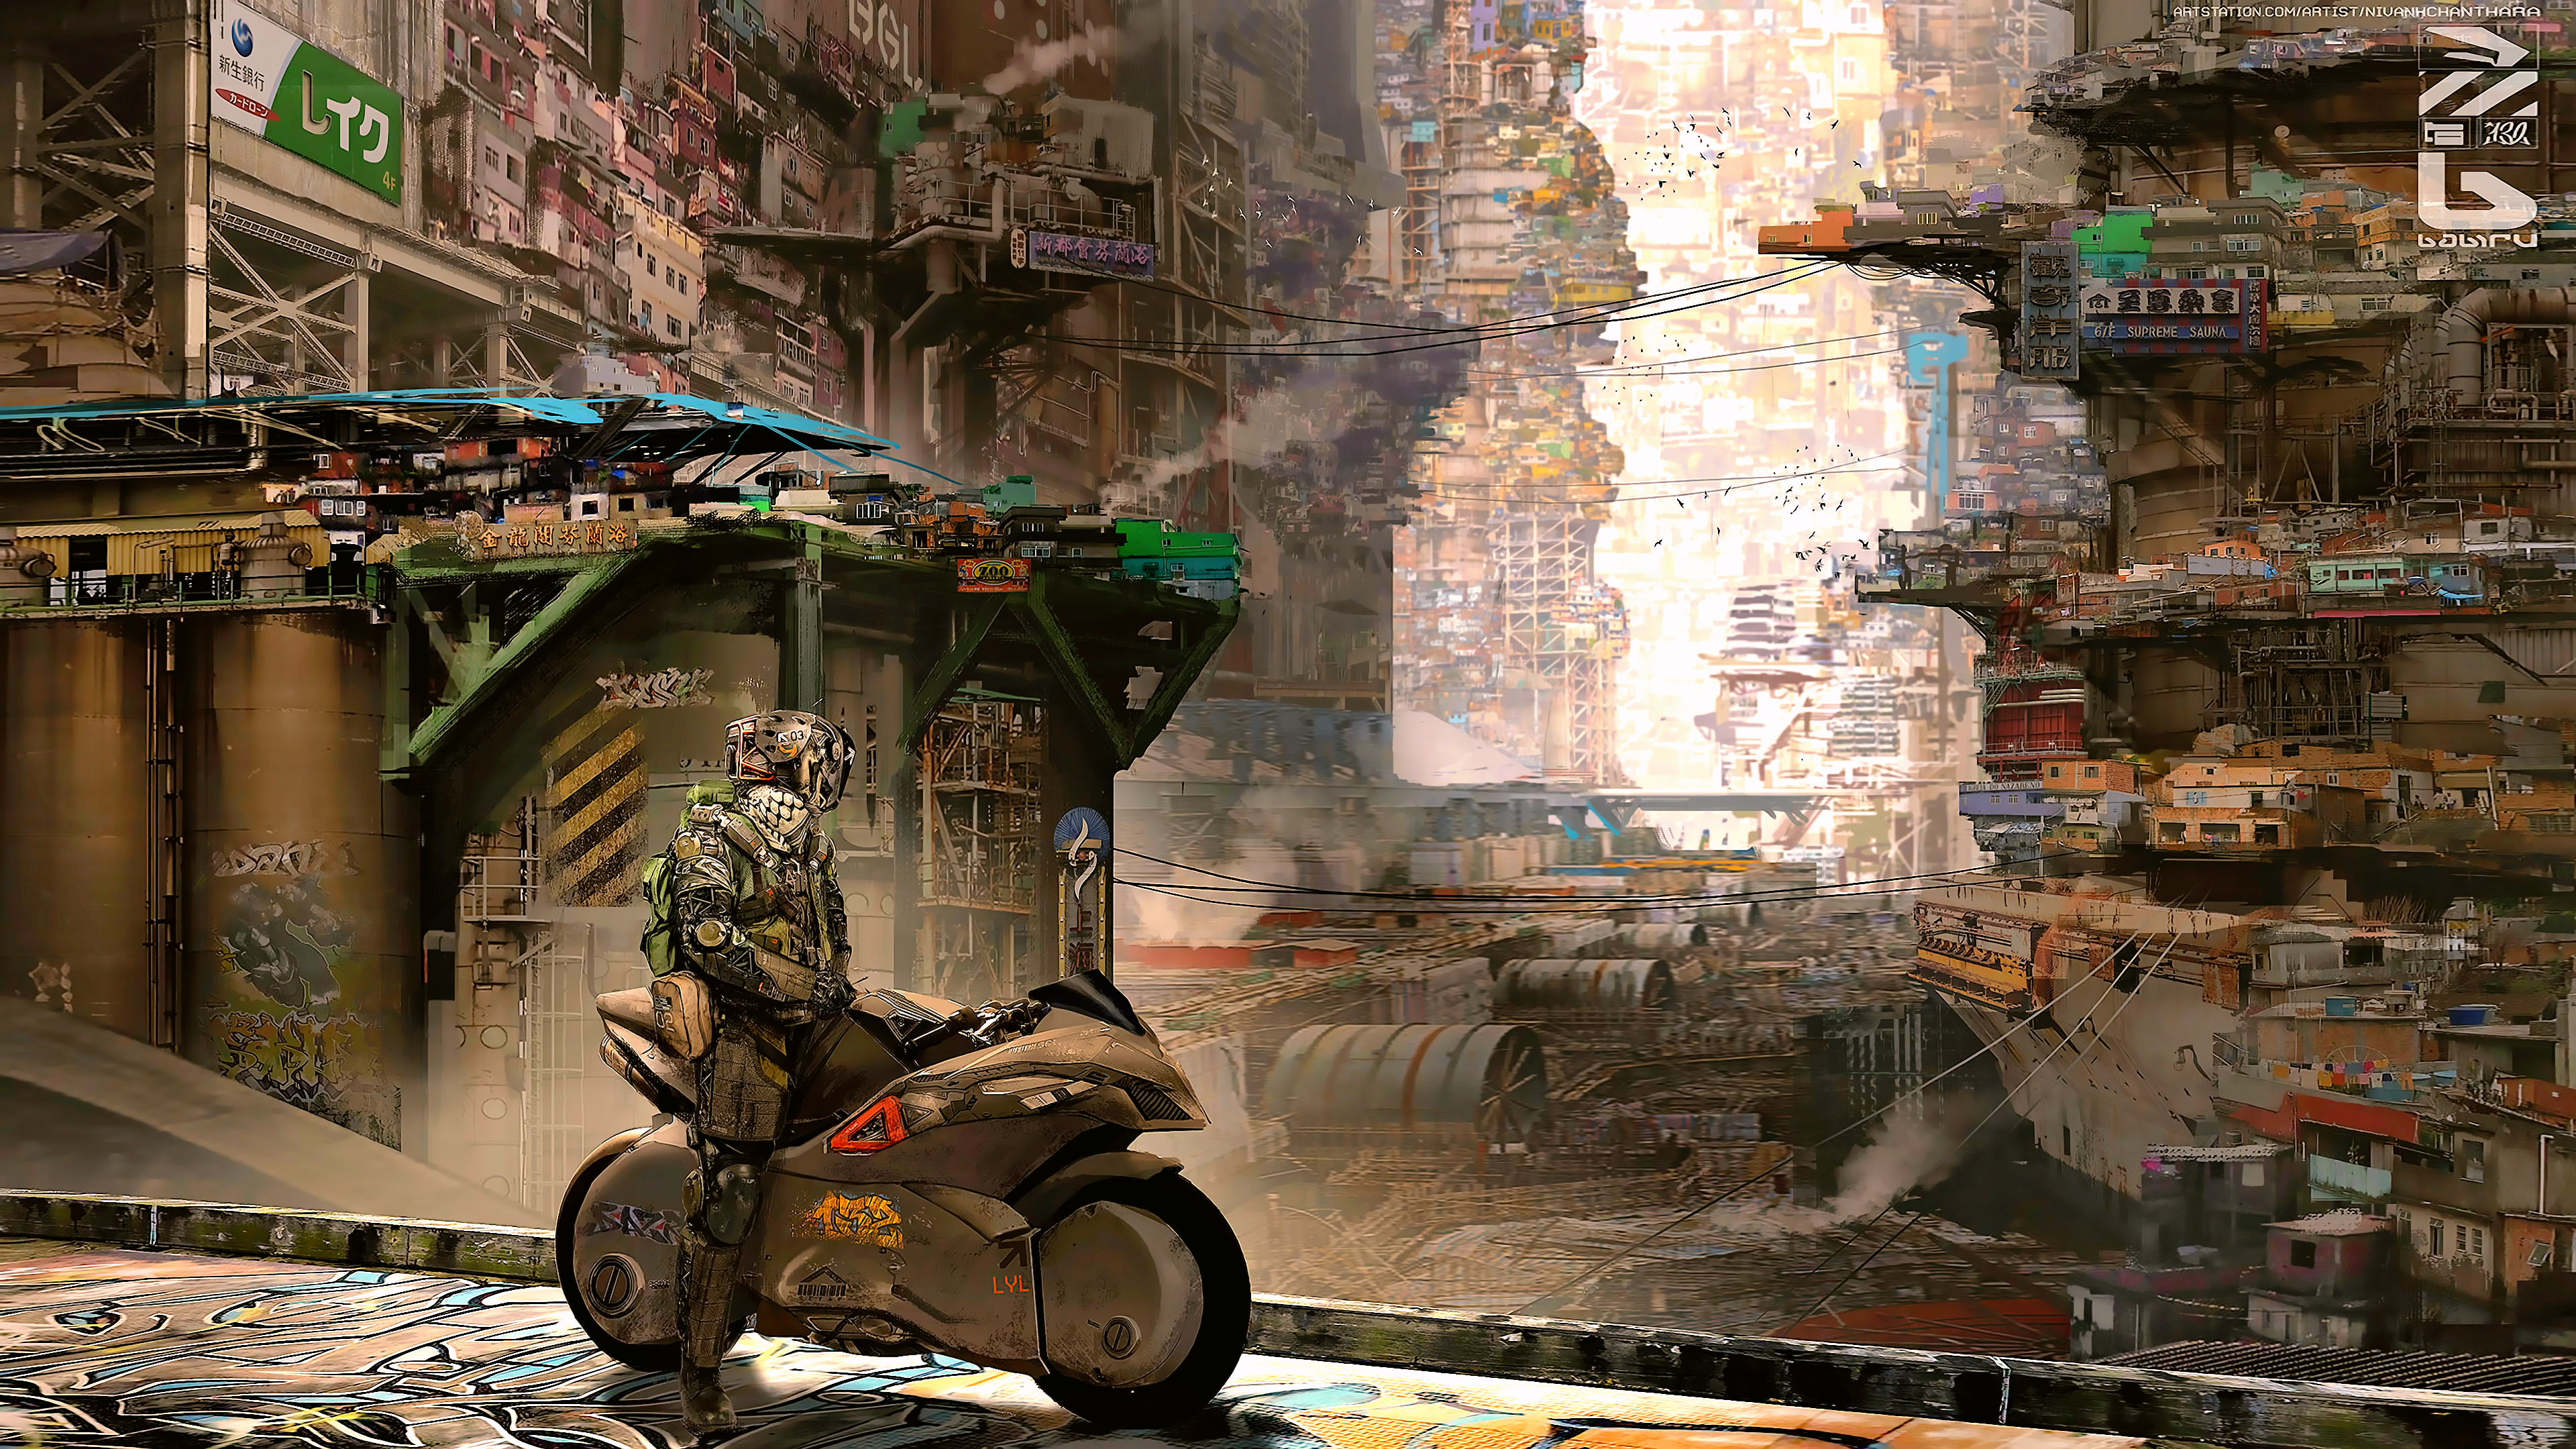 Cyber City Cyberpunk Science Fiction 4k, HD Artist, 4k Wallpapers